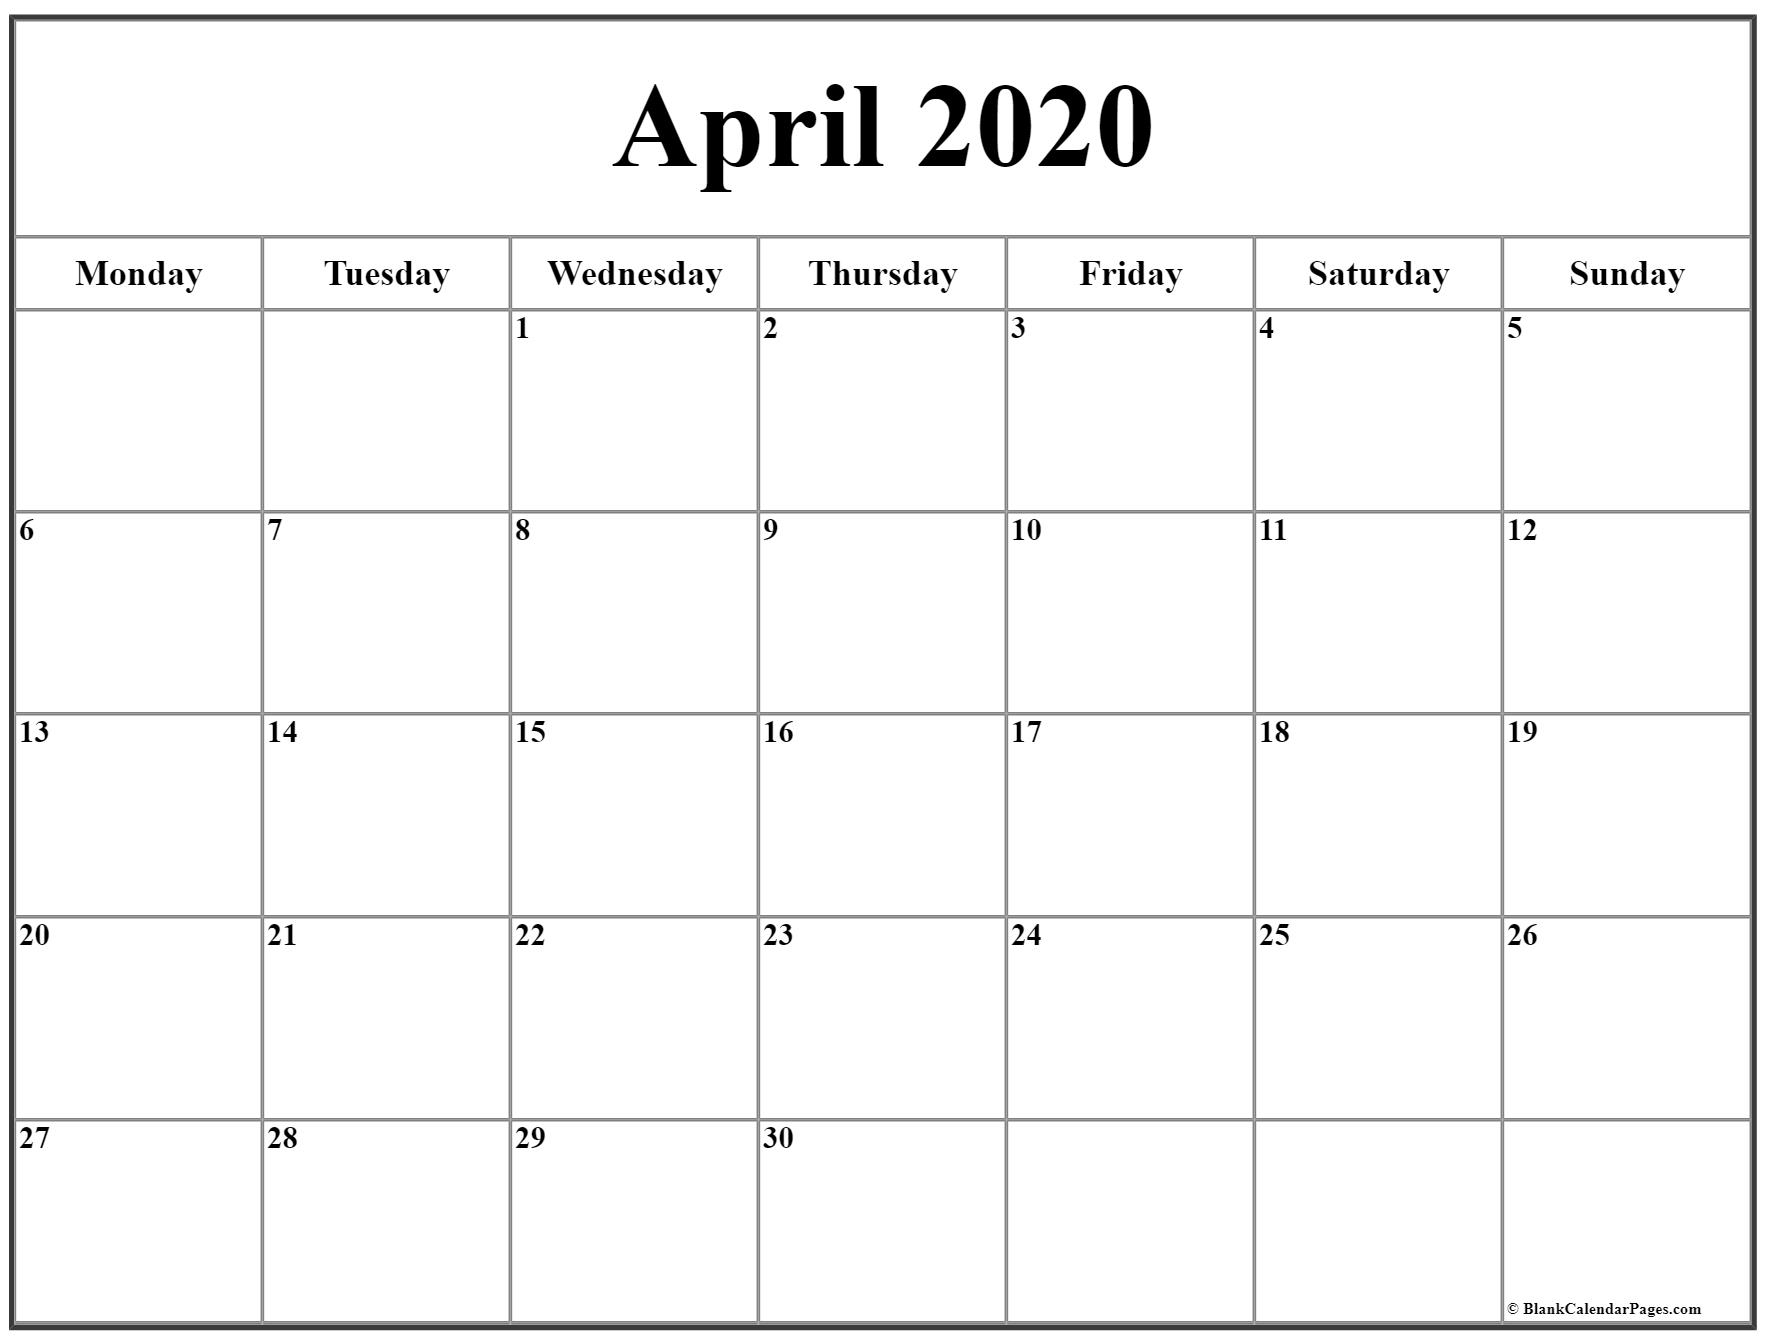 April 2020 Monday Calendar | Monday To Sunday